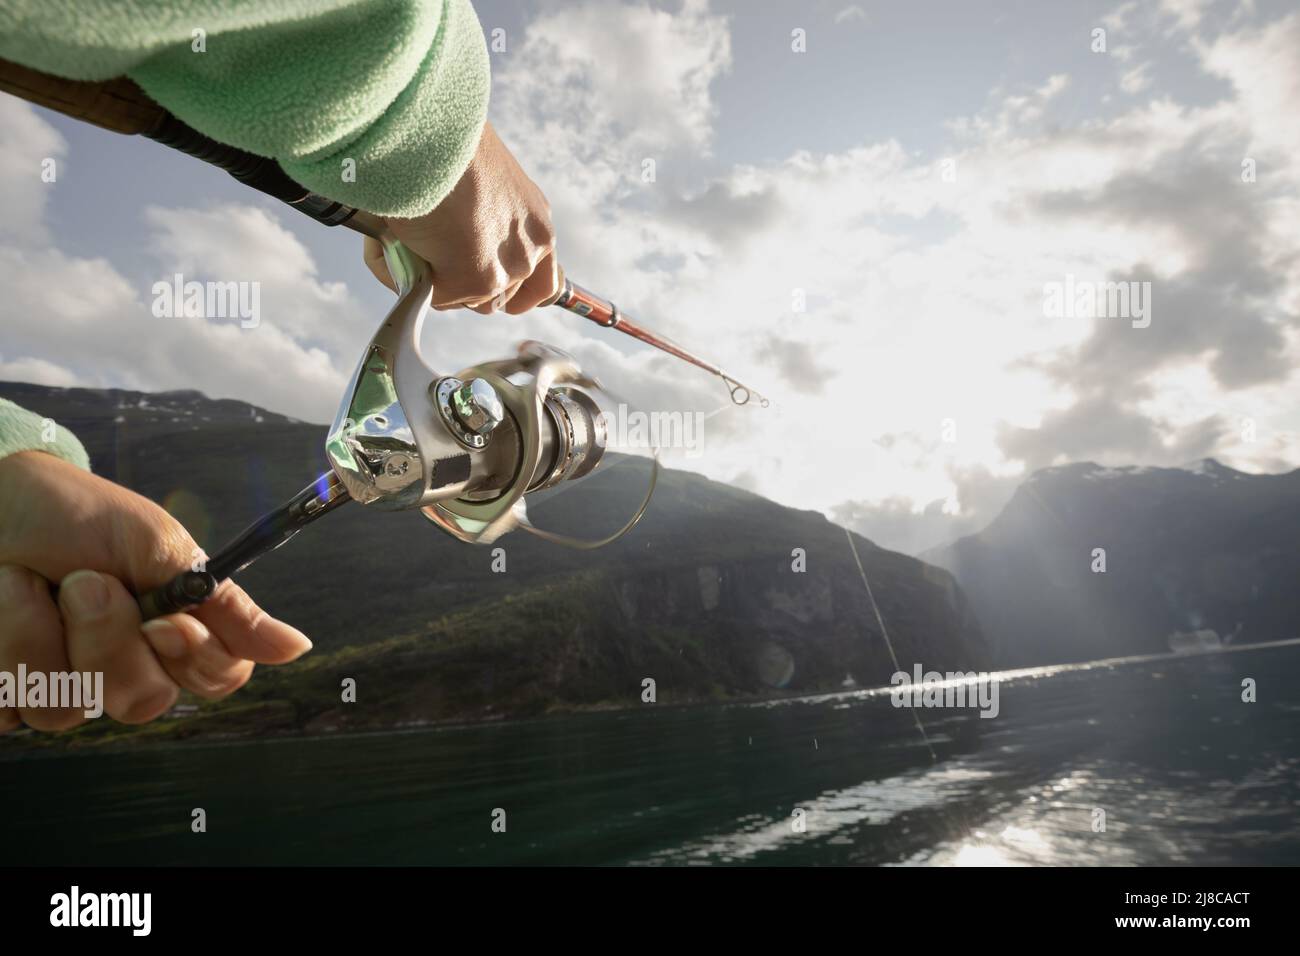 La donna la pesca sulla canna da pesca la filatura in Norvegia. La pesca in Norvegia è un modo per abbracciare lo stile di vita locale. Innumerevoli laghi e fiumi e un extensiv Foto Stock